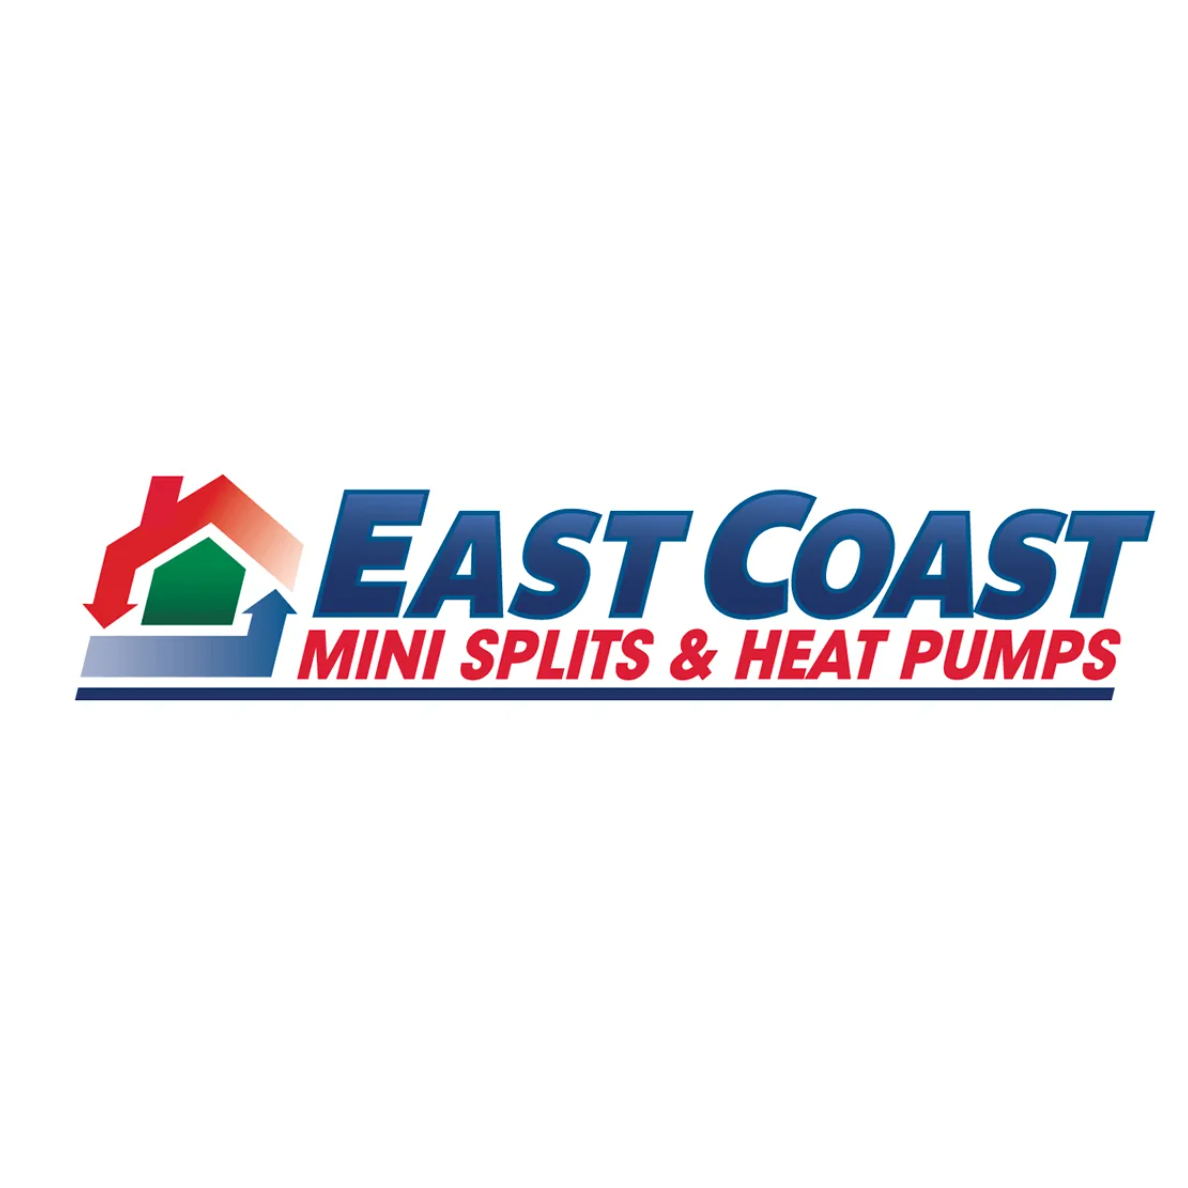 East Coast Mini Splits & Heat Pumps